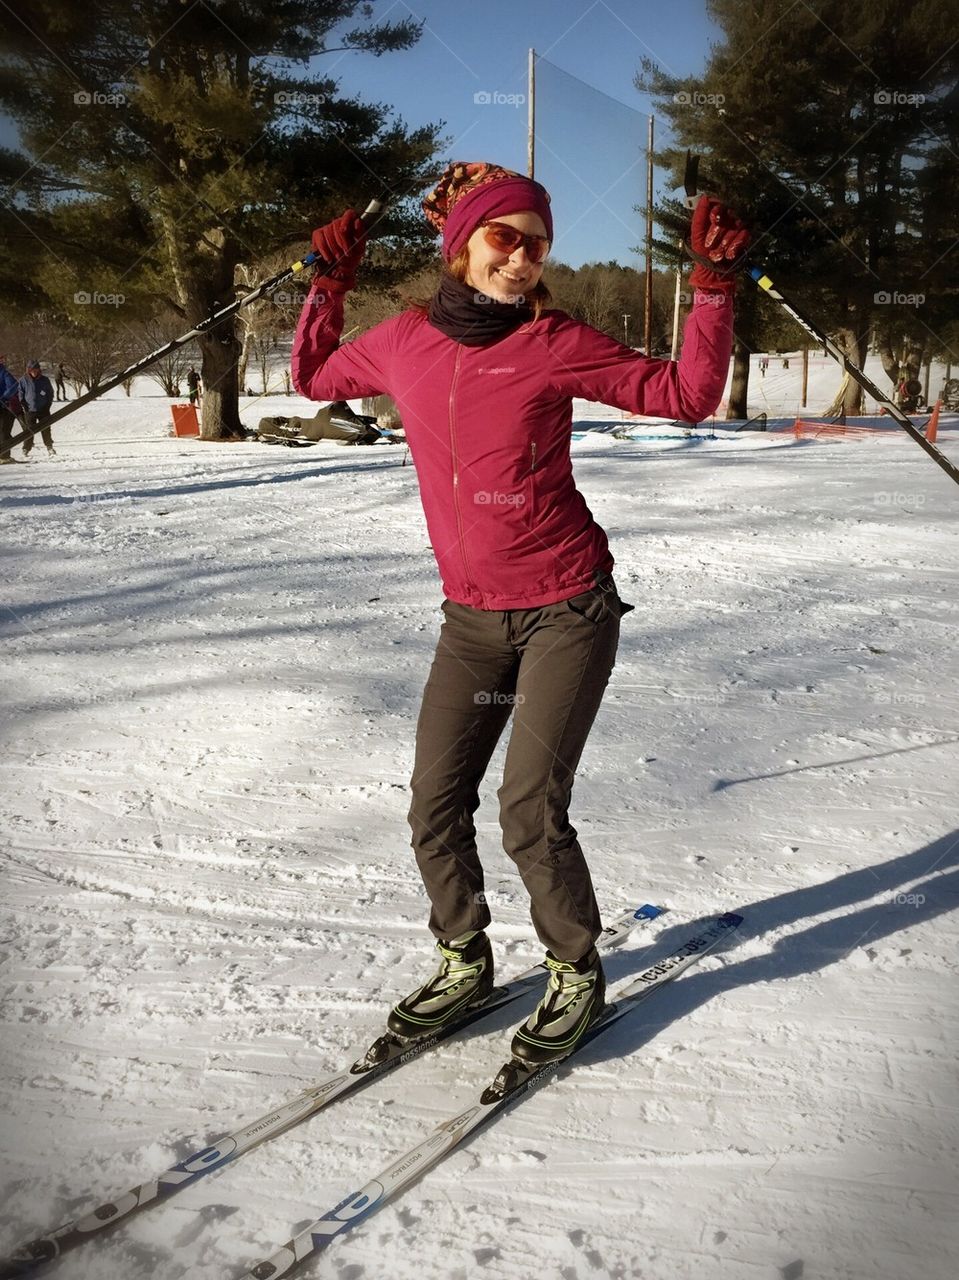 Ski fun